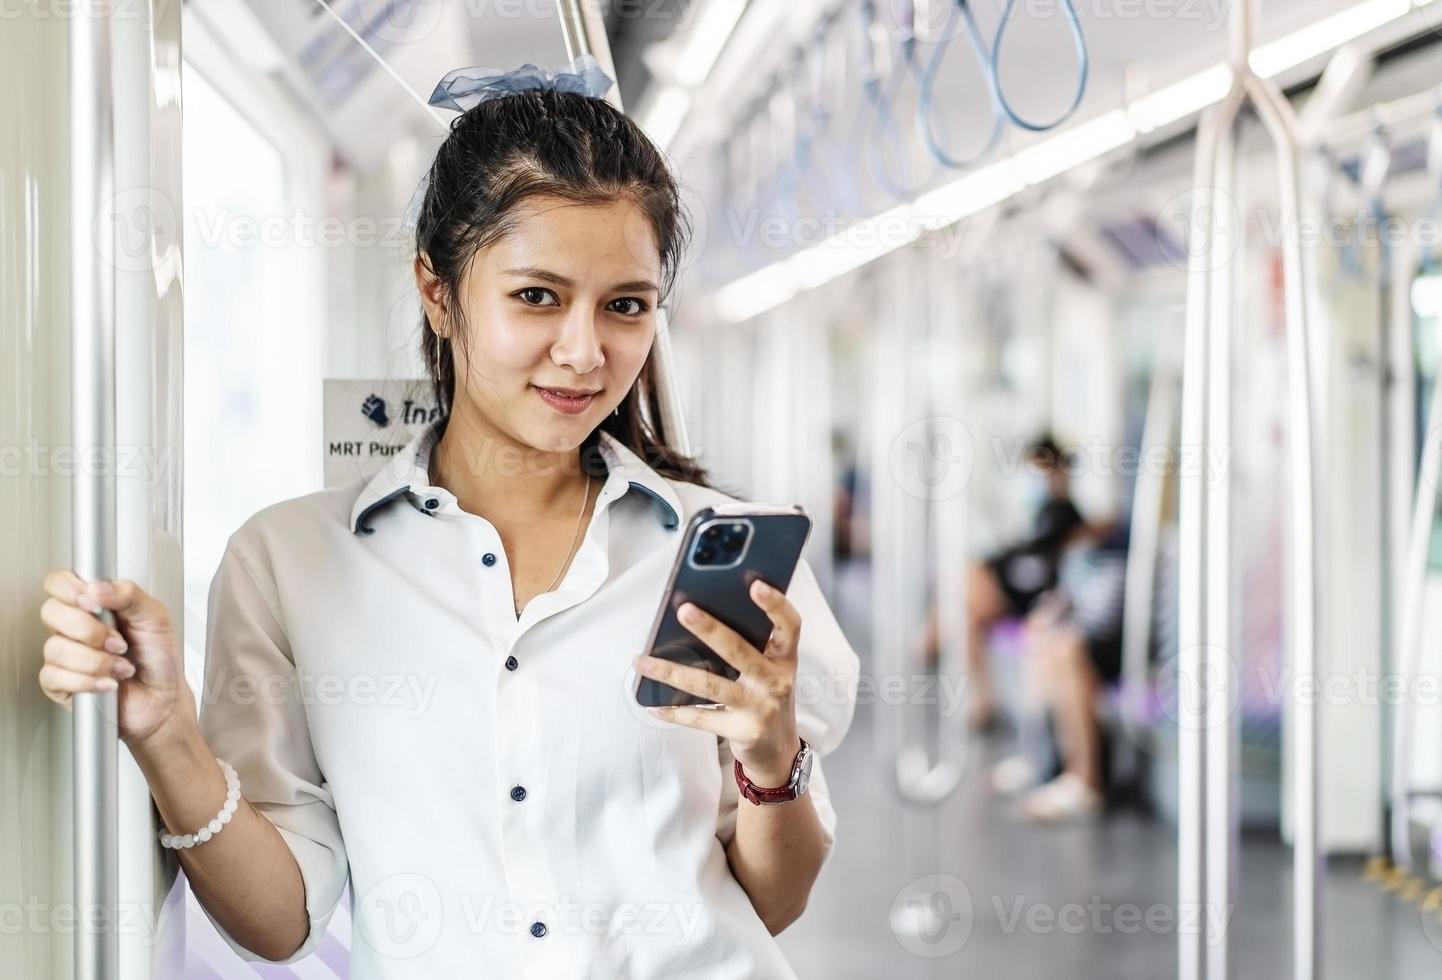 jeune femme asiatique passagère debout et utilisant un téléphone portable à l'intérieur d'une voiture vide de métro ou de train aérien, loisirs et vie quotidienne photo